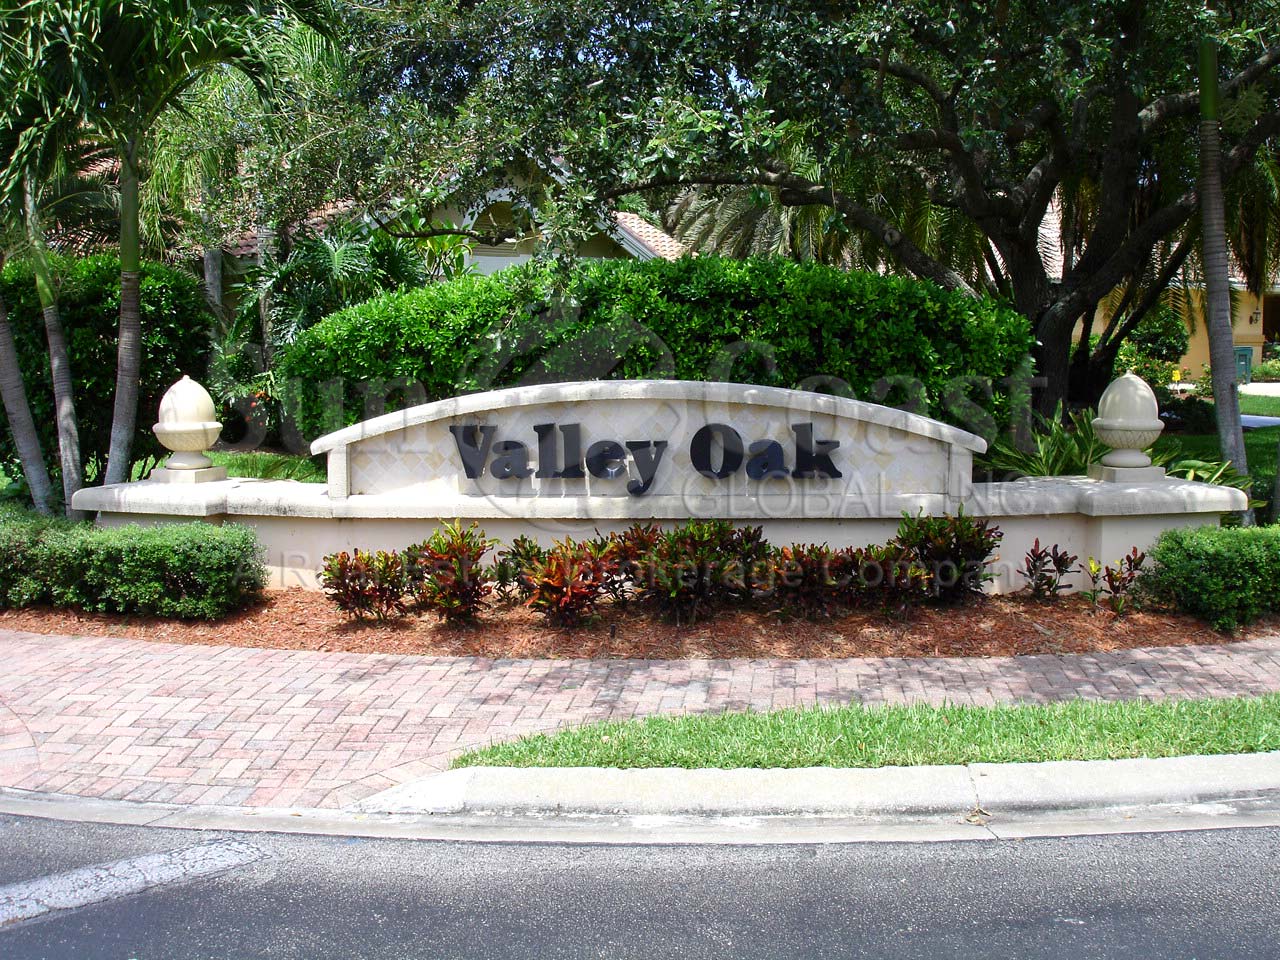 Valley Oak signage